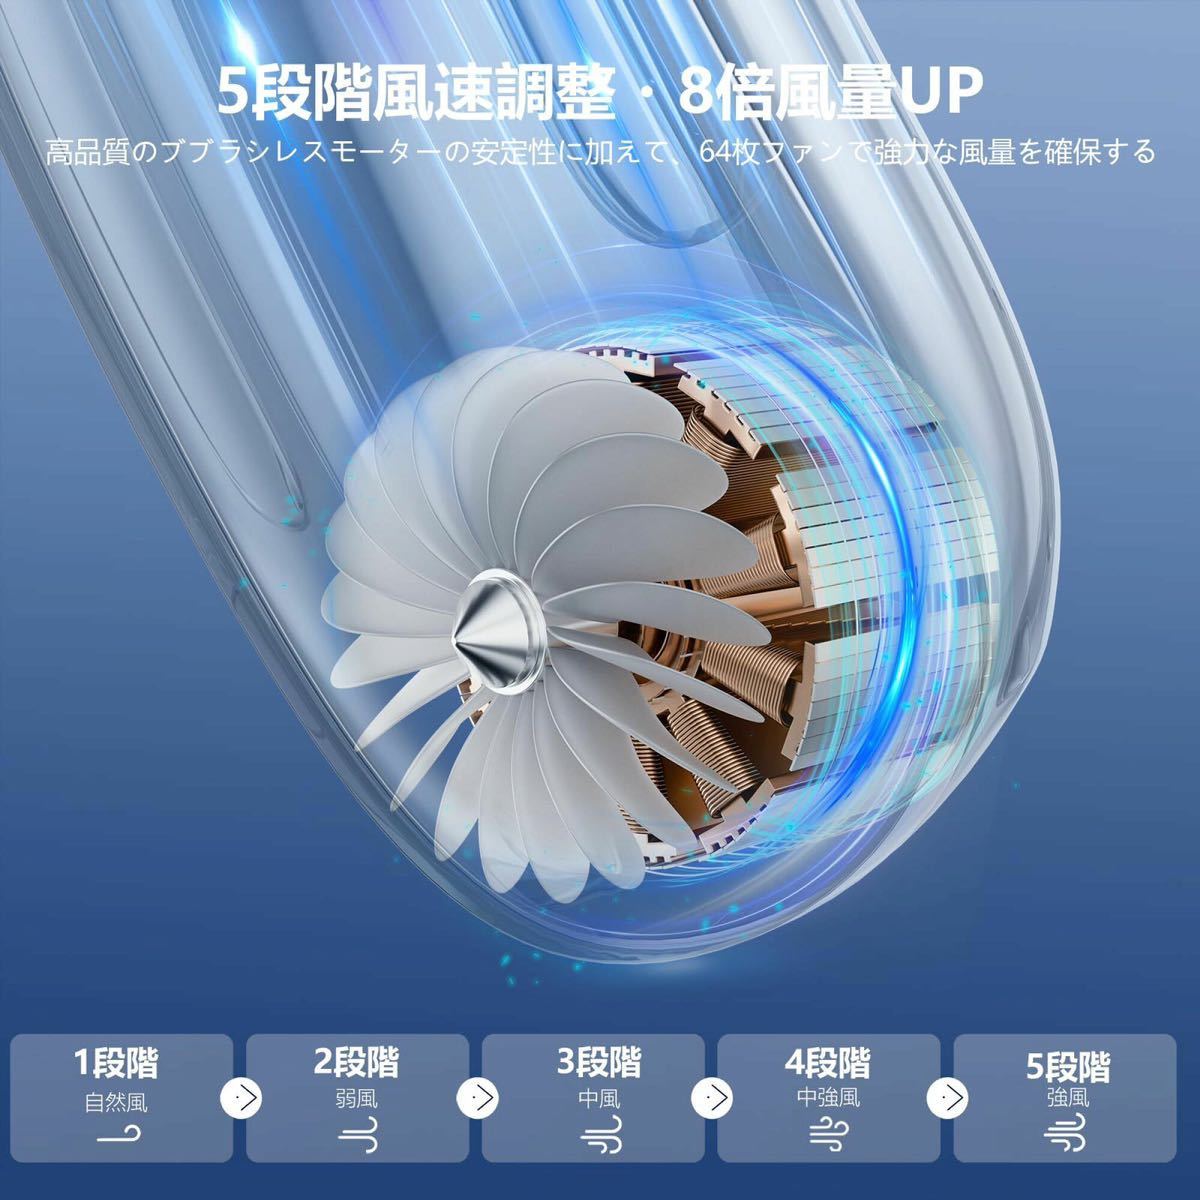 ー大特価ー 首掛け扇風機 ネッククーラー LEDディスプレイ LED液晶ディスプレイ搭載 2000mAh大容量バッテリー 軽量 風速5段階 8時間連続